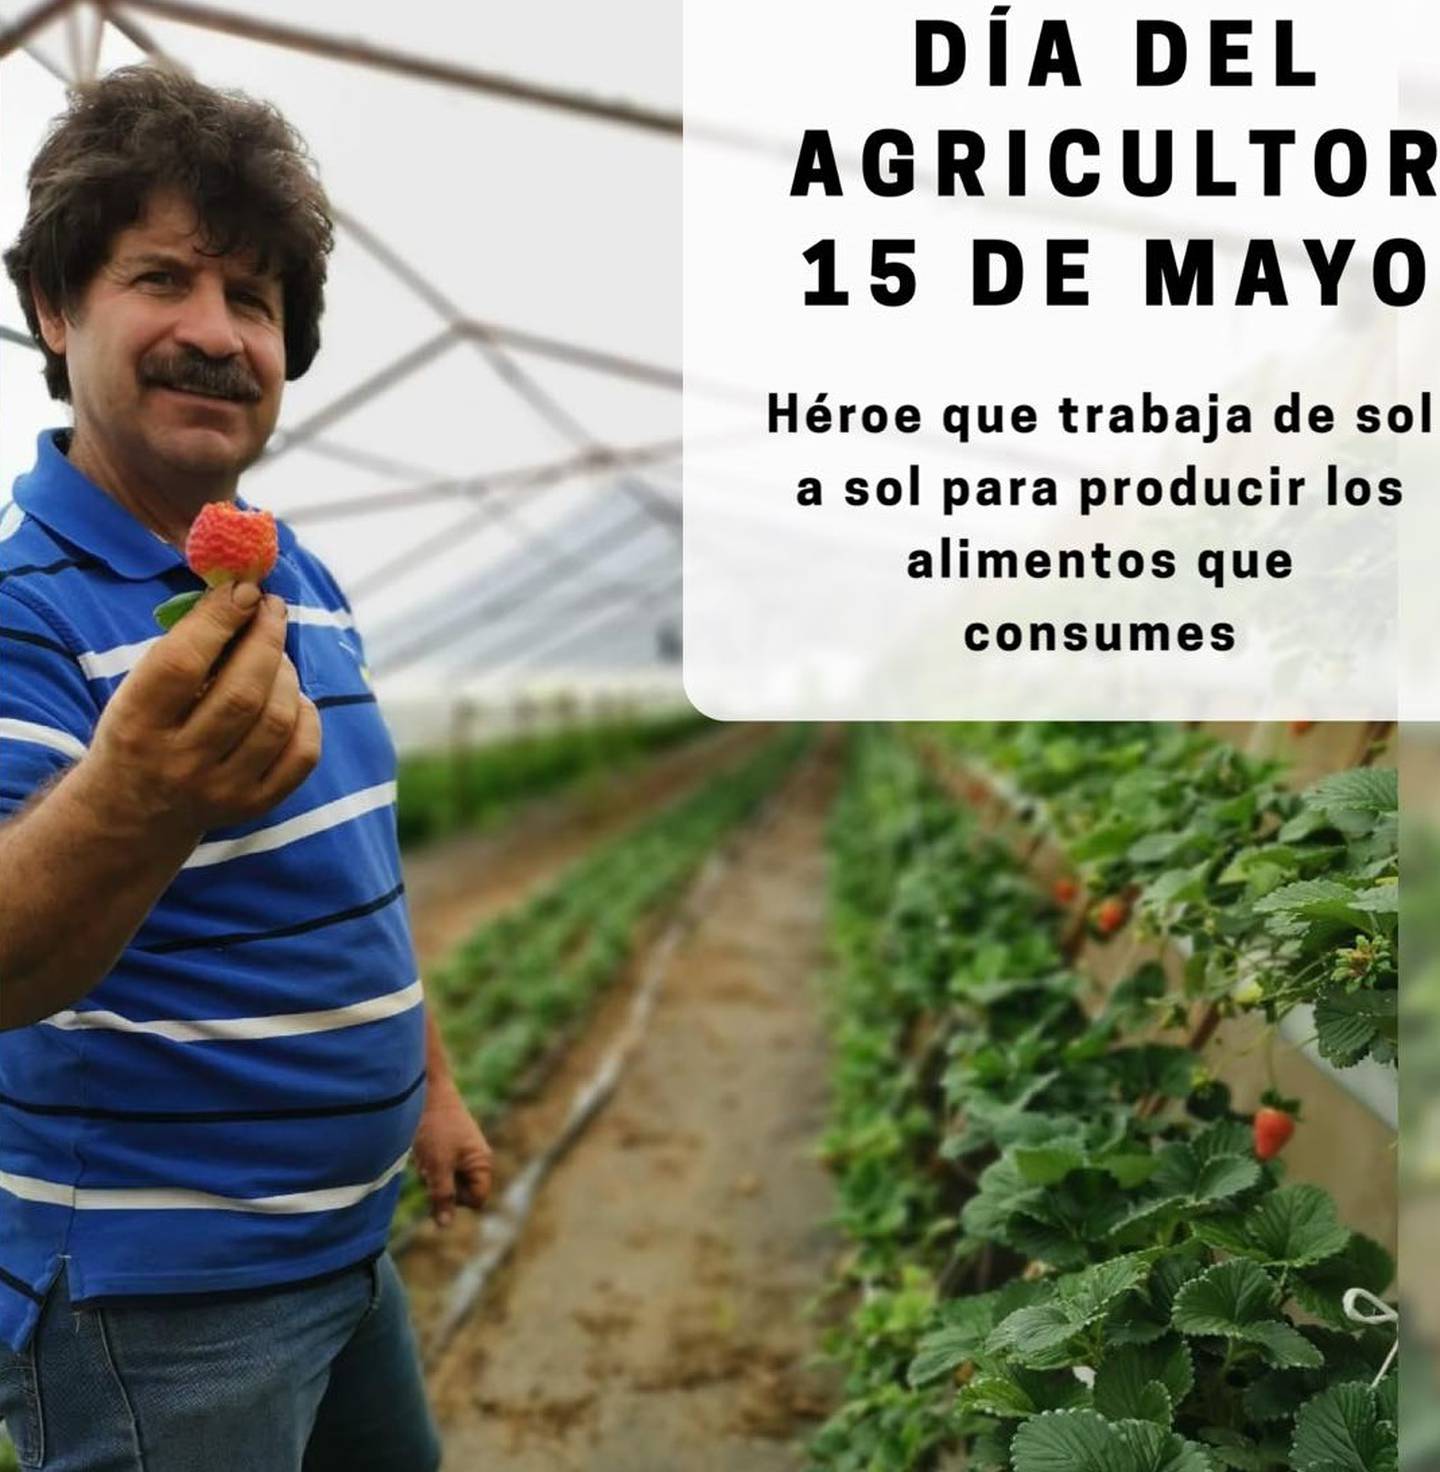 Don Henry Arroyo Núñez desde hace más de treinta años es agricultor. Cultiva fresas. Cuando su hijo, Abelardo Arroyo Vargas, nació hace 22 años, sabía que le enseñaría el noble oficio de la agricultura